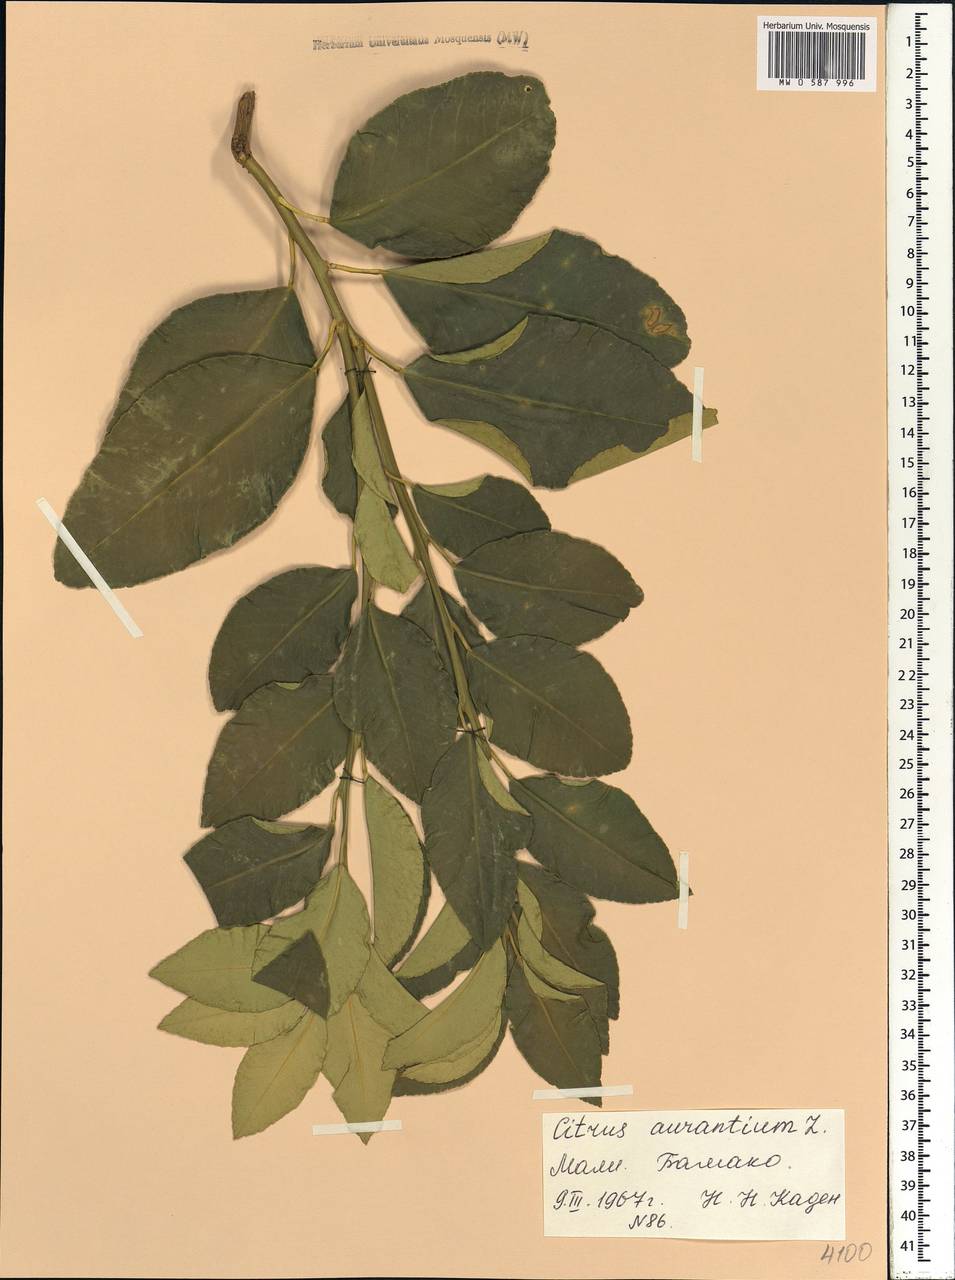 Citrus ×aurantium L., Африка (AFR) (Мали)